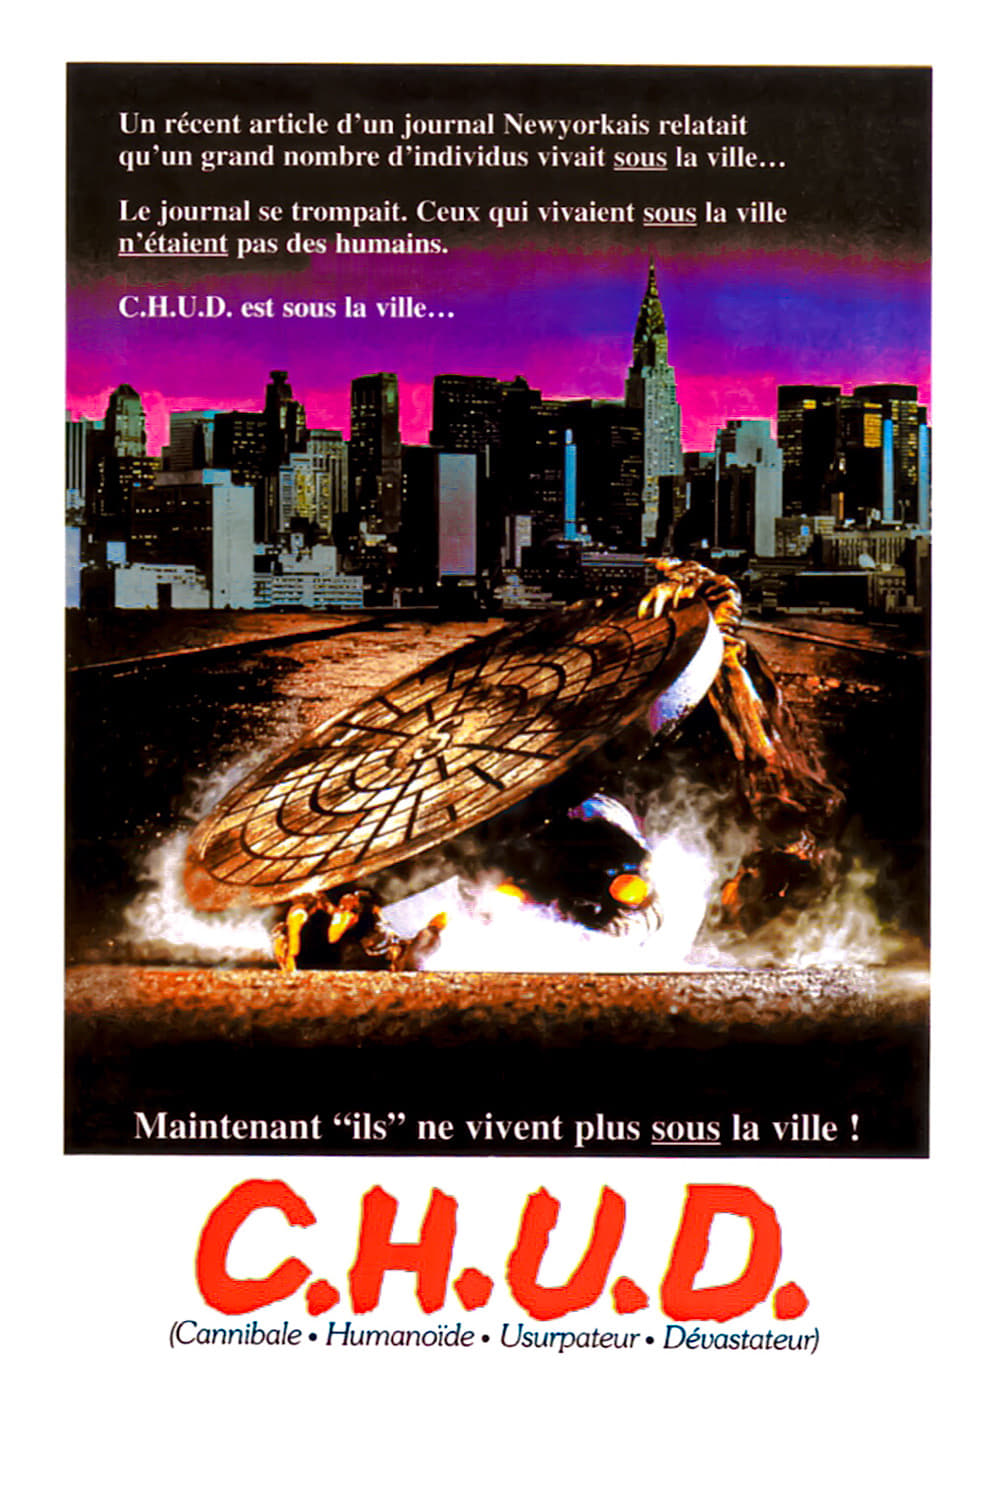 C.H.U.D. est-il disponible sur Netflix ou autre ?